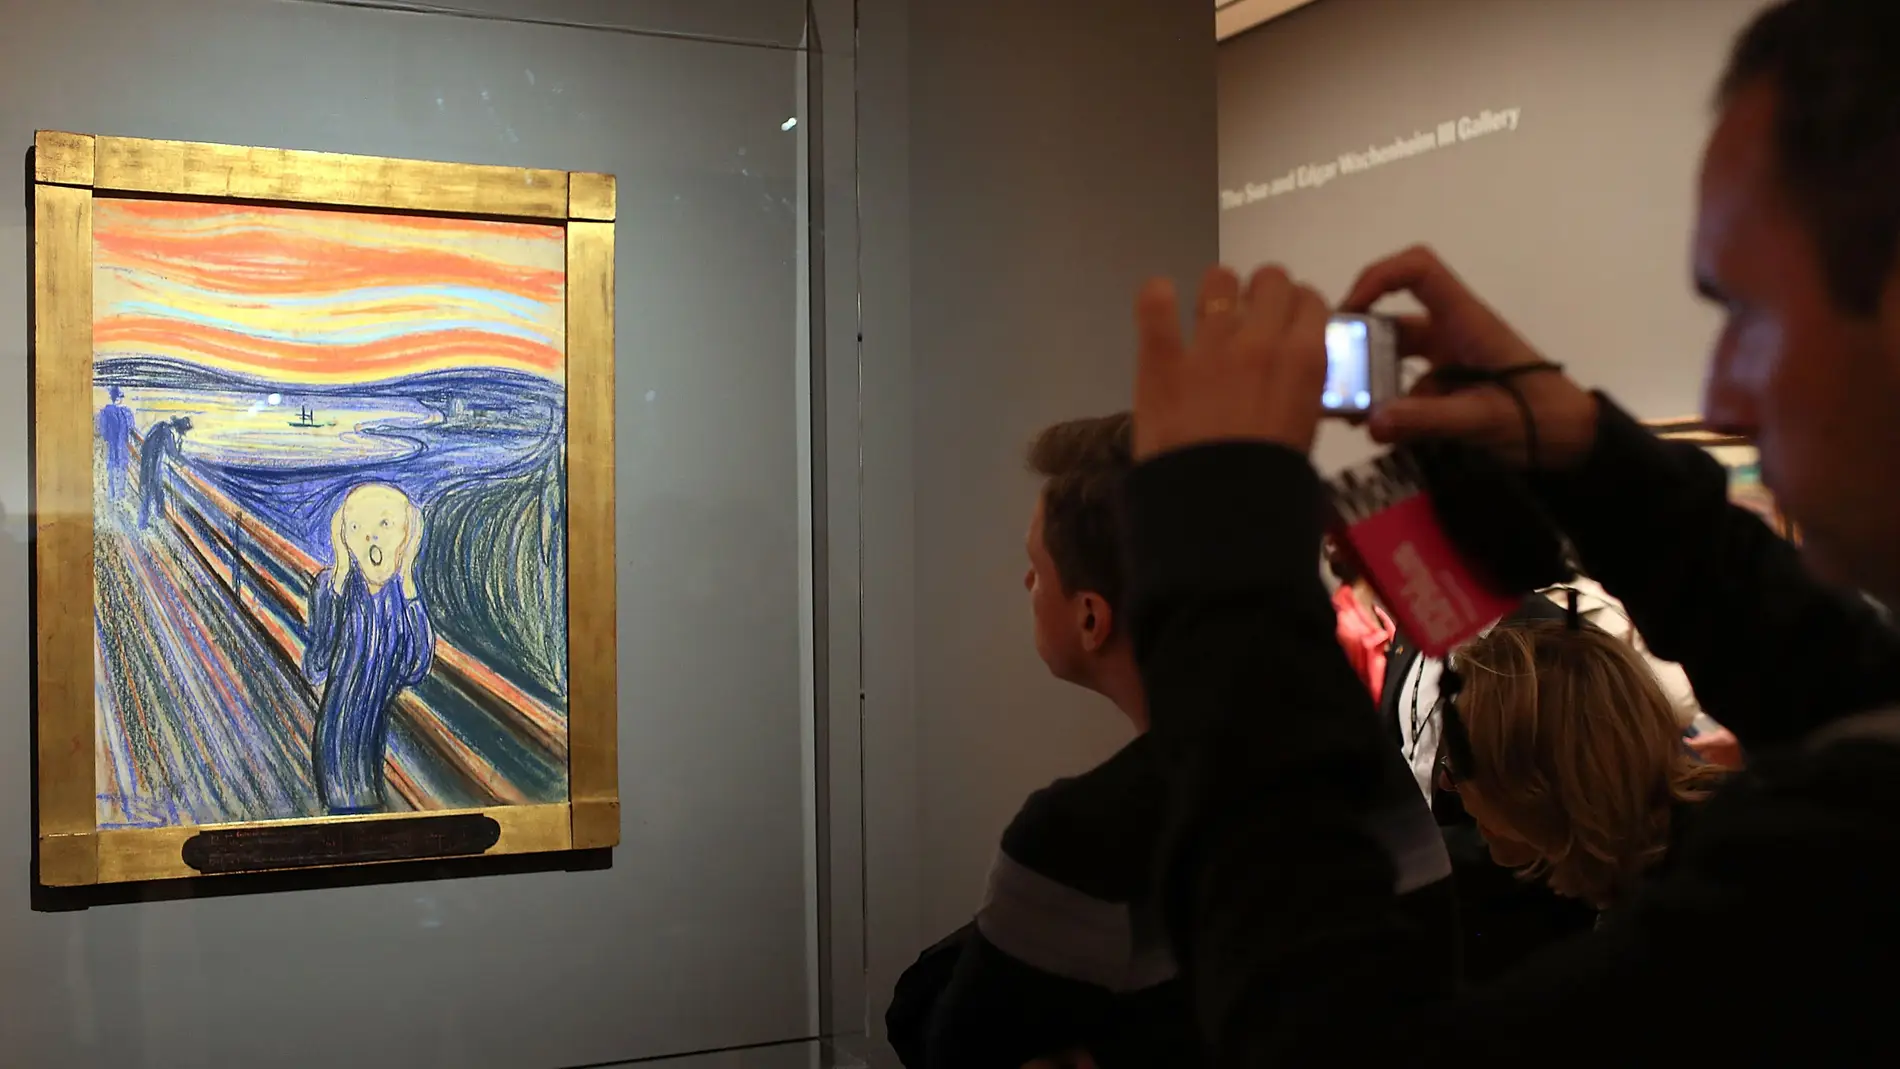 Tres activistas intentan adherirse con pegamento a "El grito" de Munch